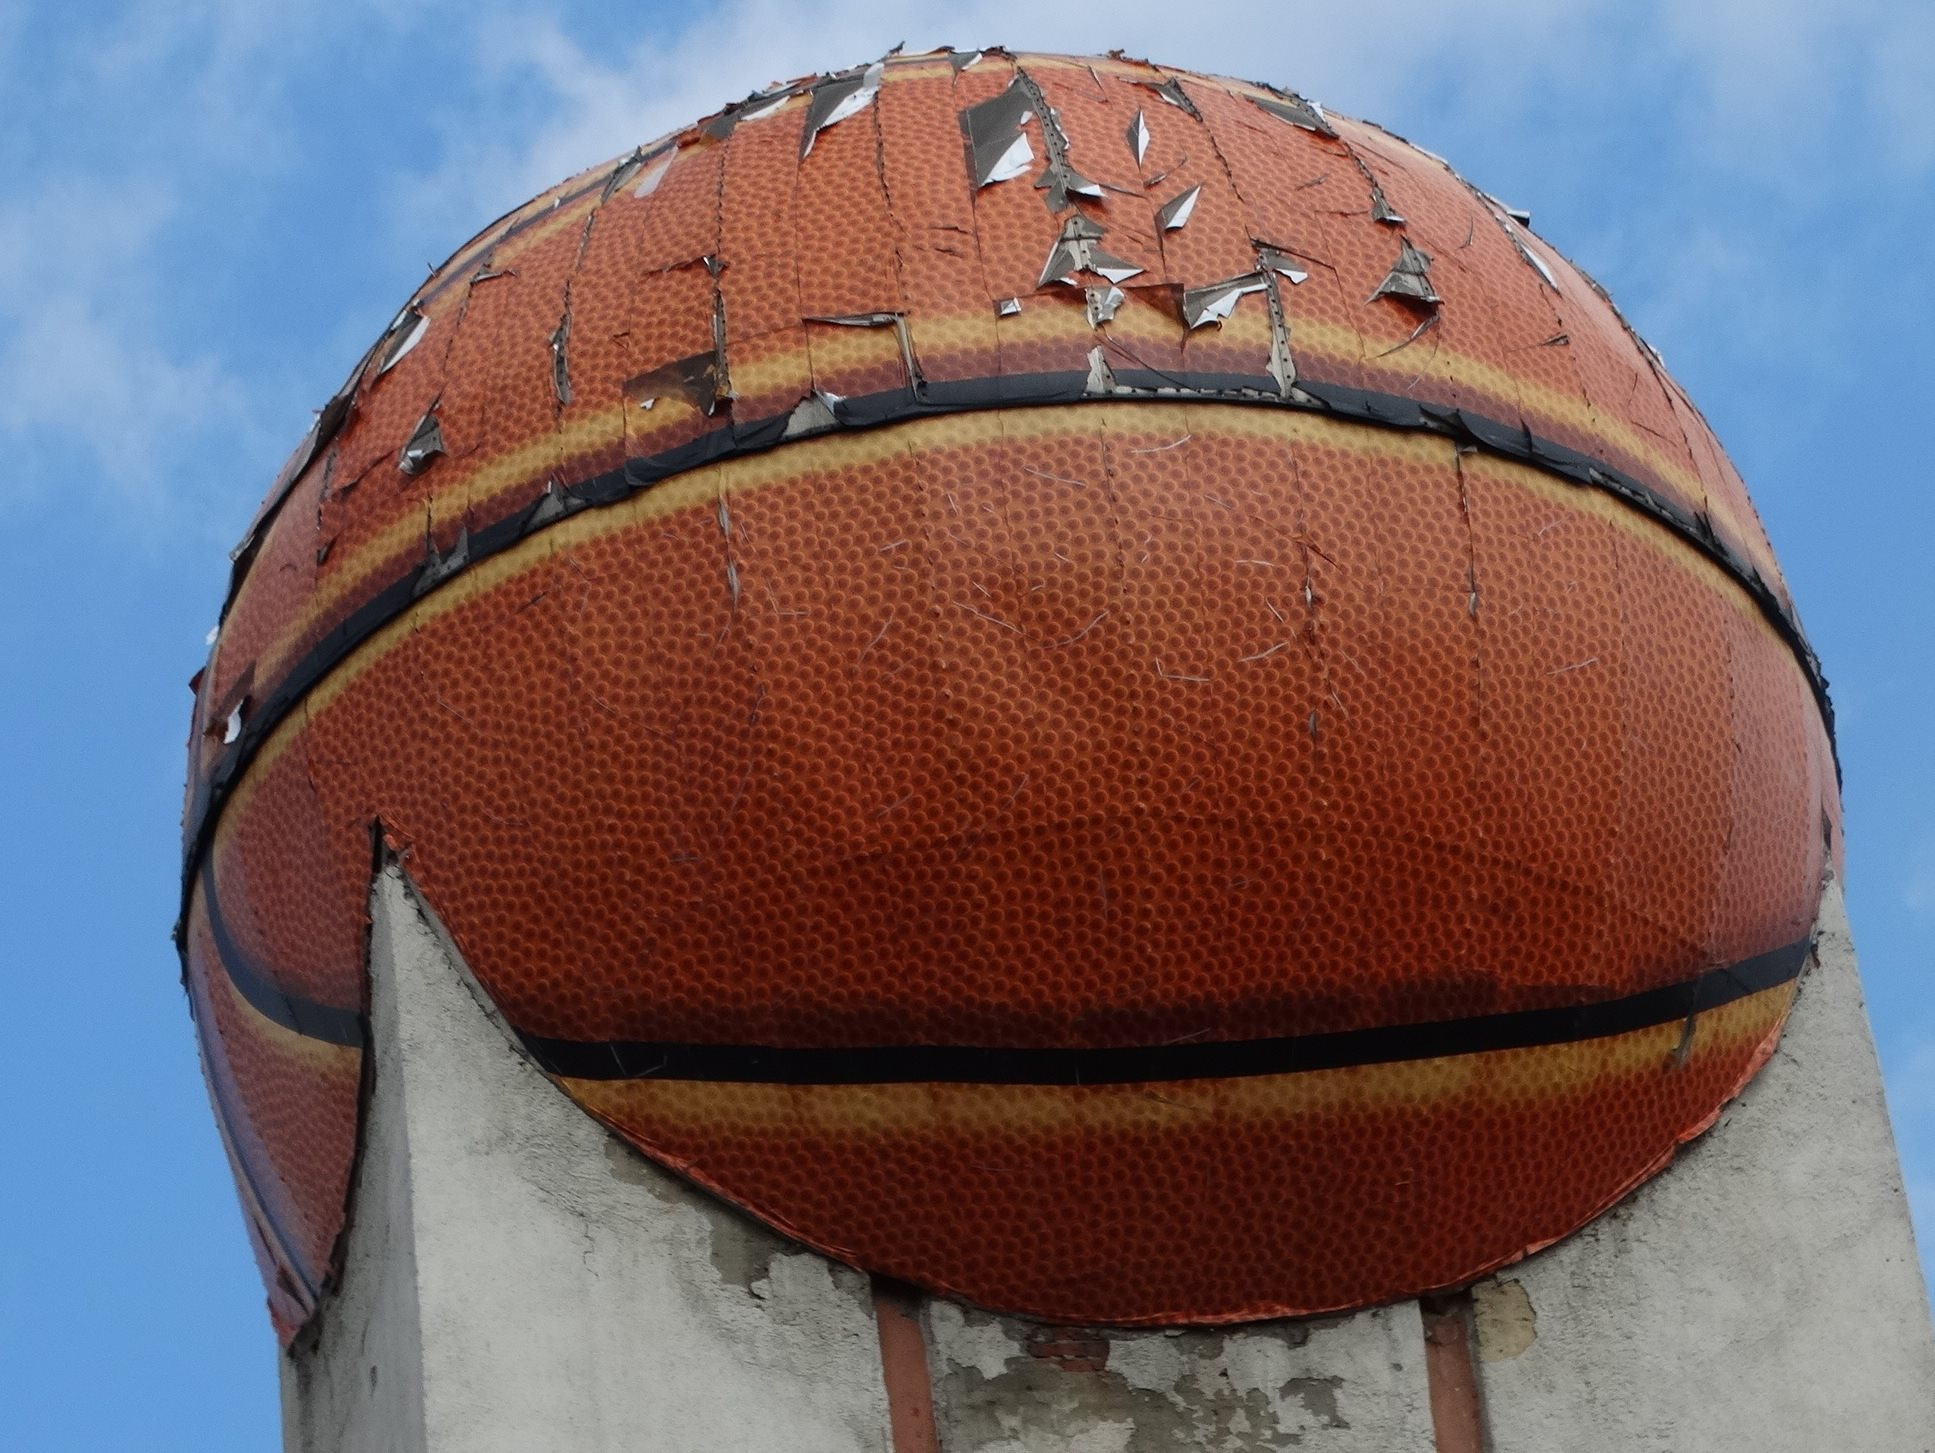 Обсерваторию оформили в виде мяча в 2014 году — после возрождения БК «Динамо»